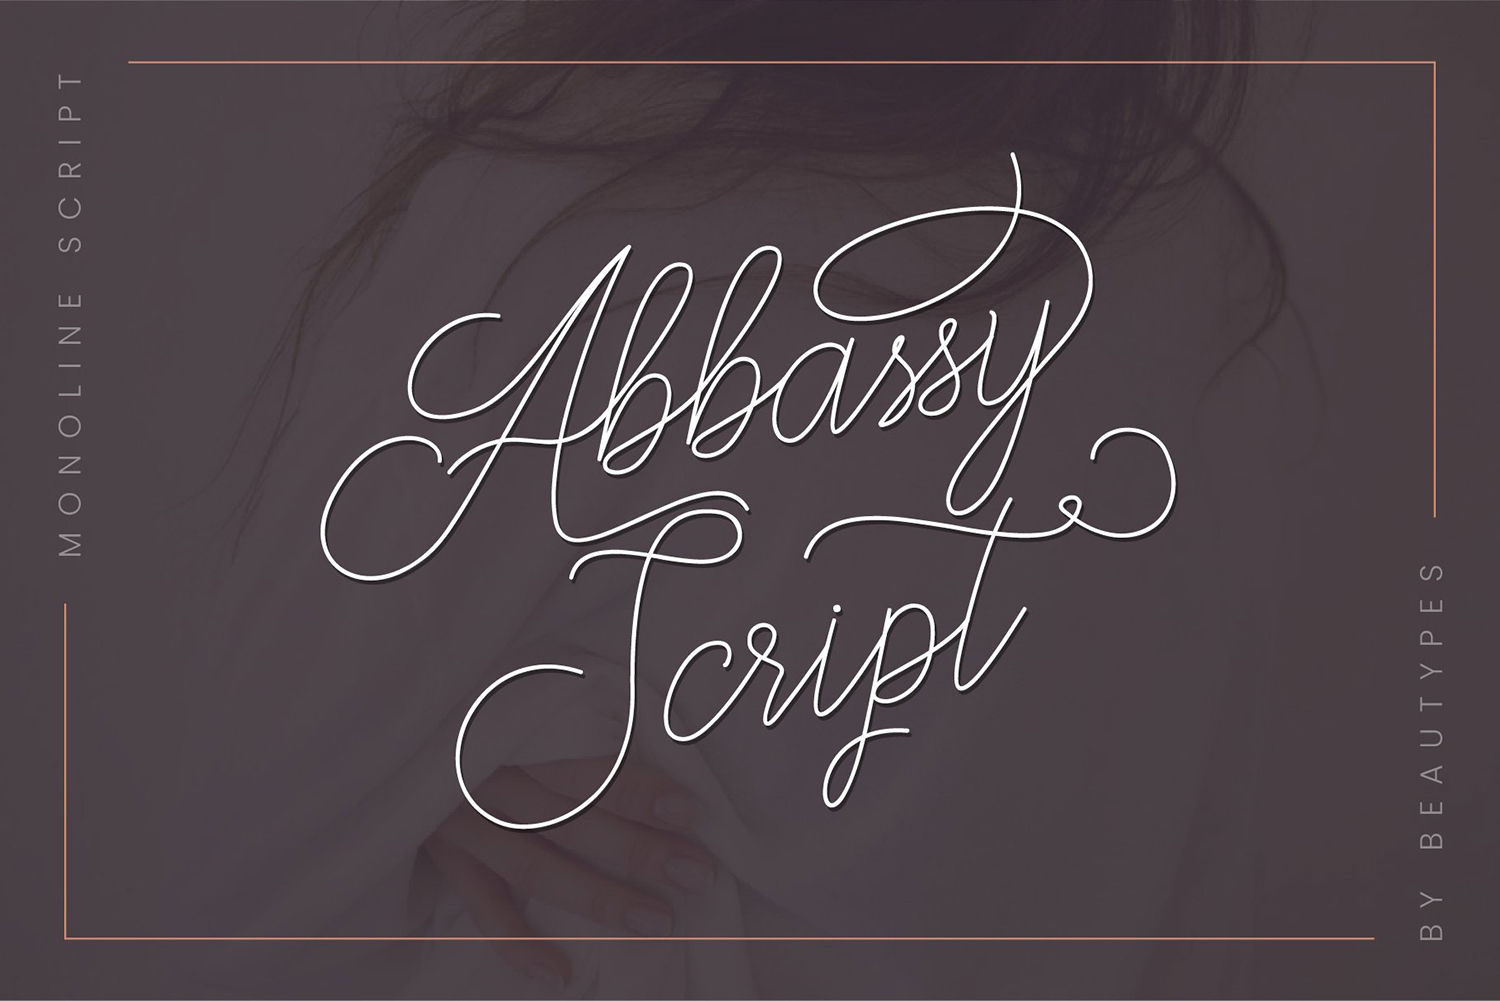 Abbassy Script Free Font